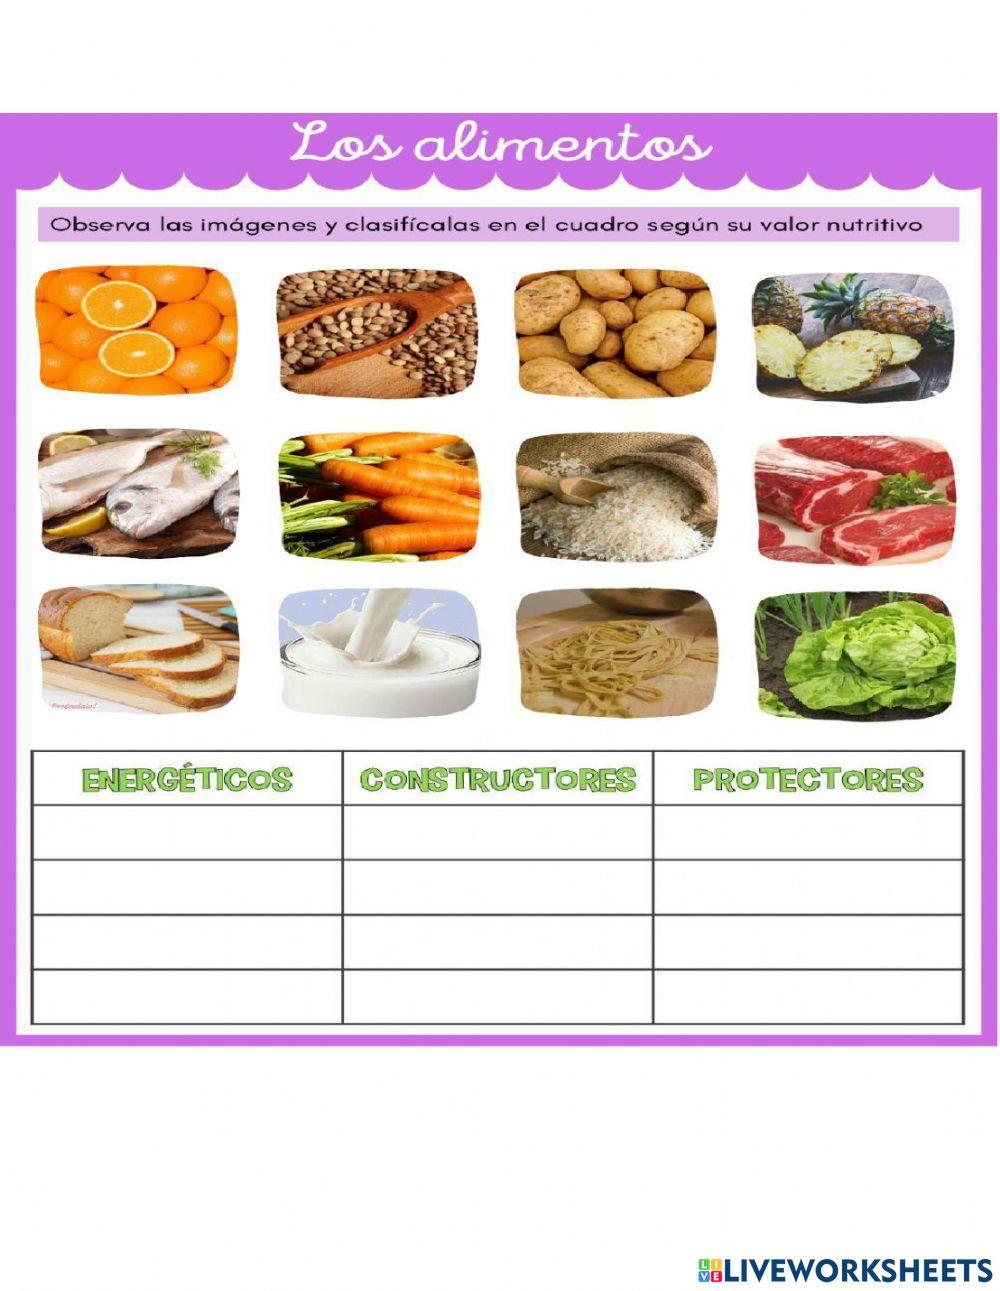 Los alimentos y su clasificación